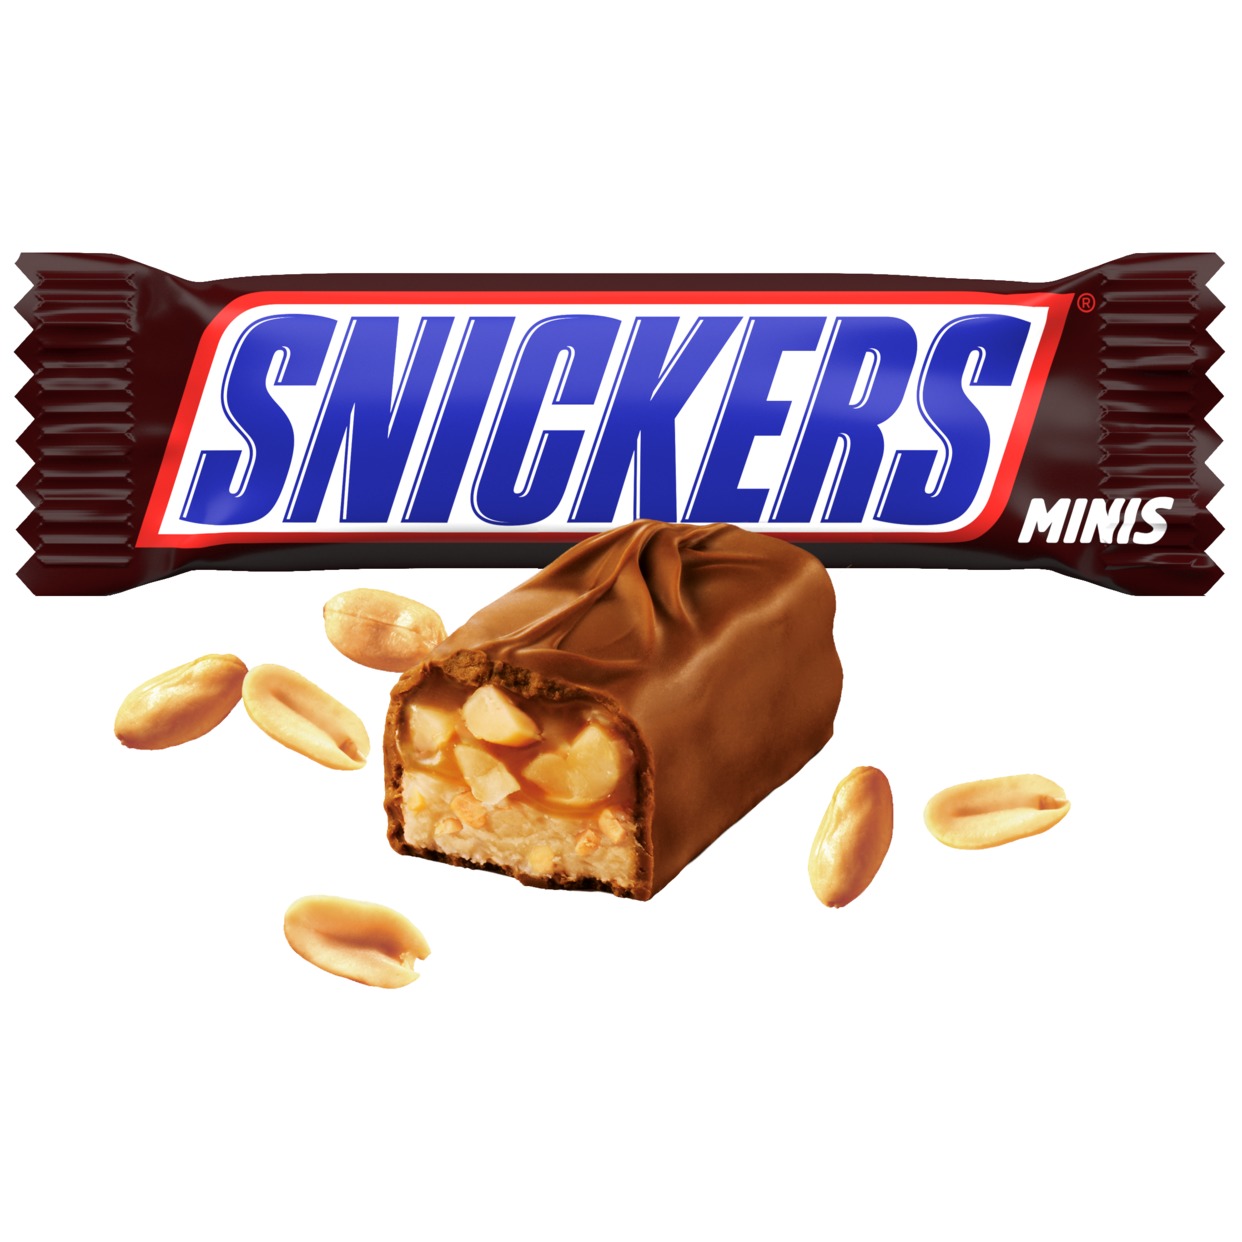 Шоколадный батончик Snickers Minis по акции в Пятерочке